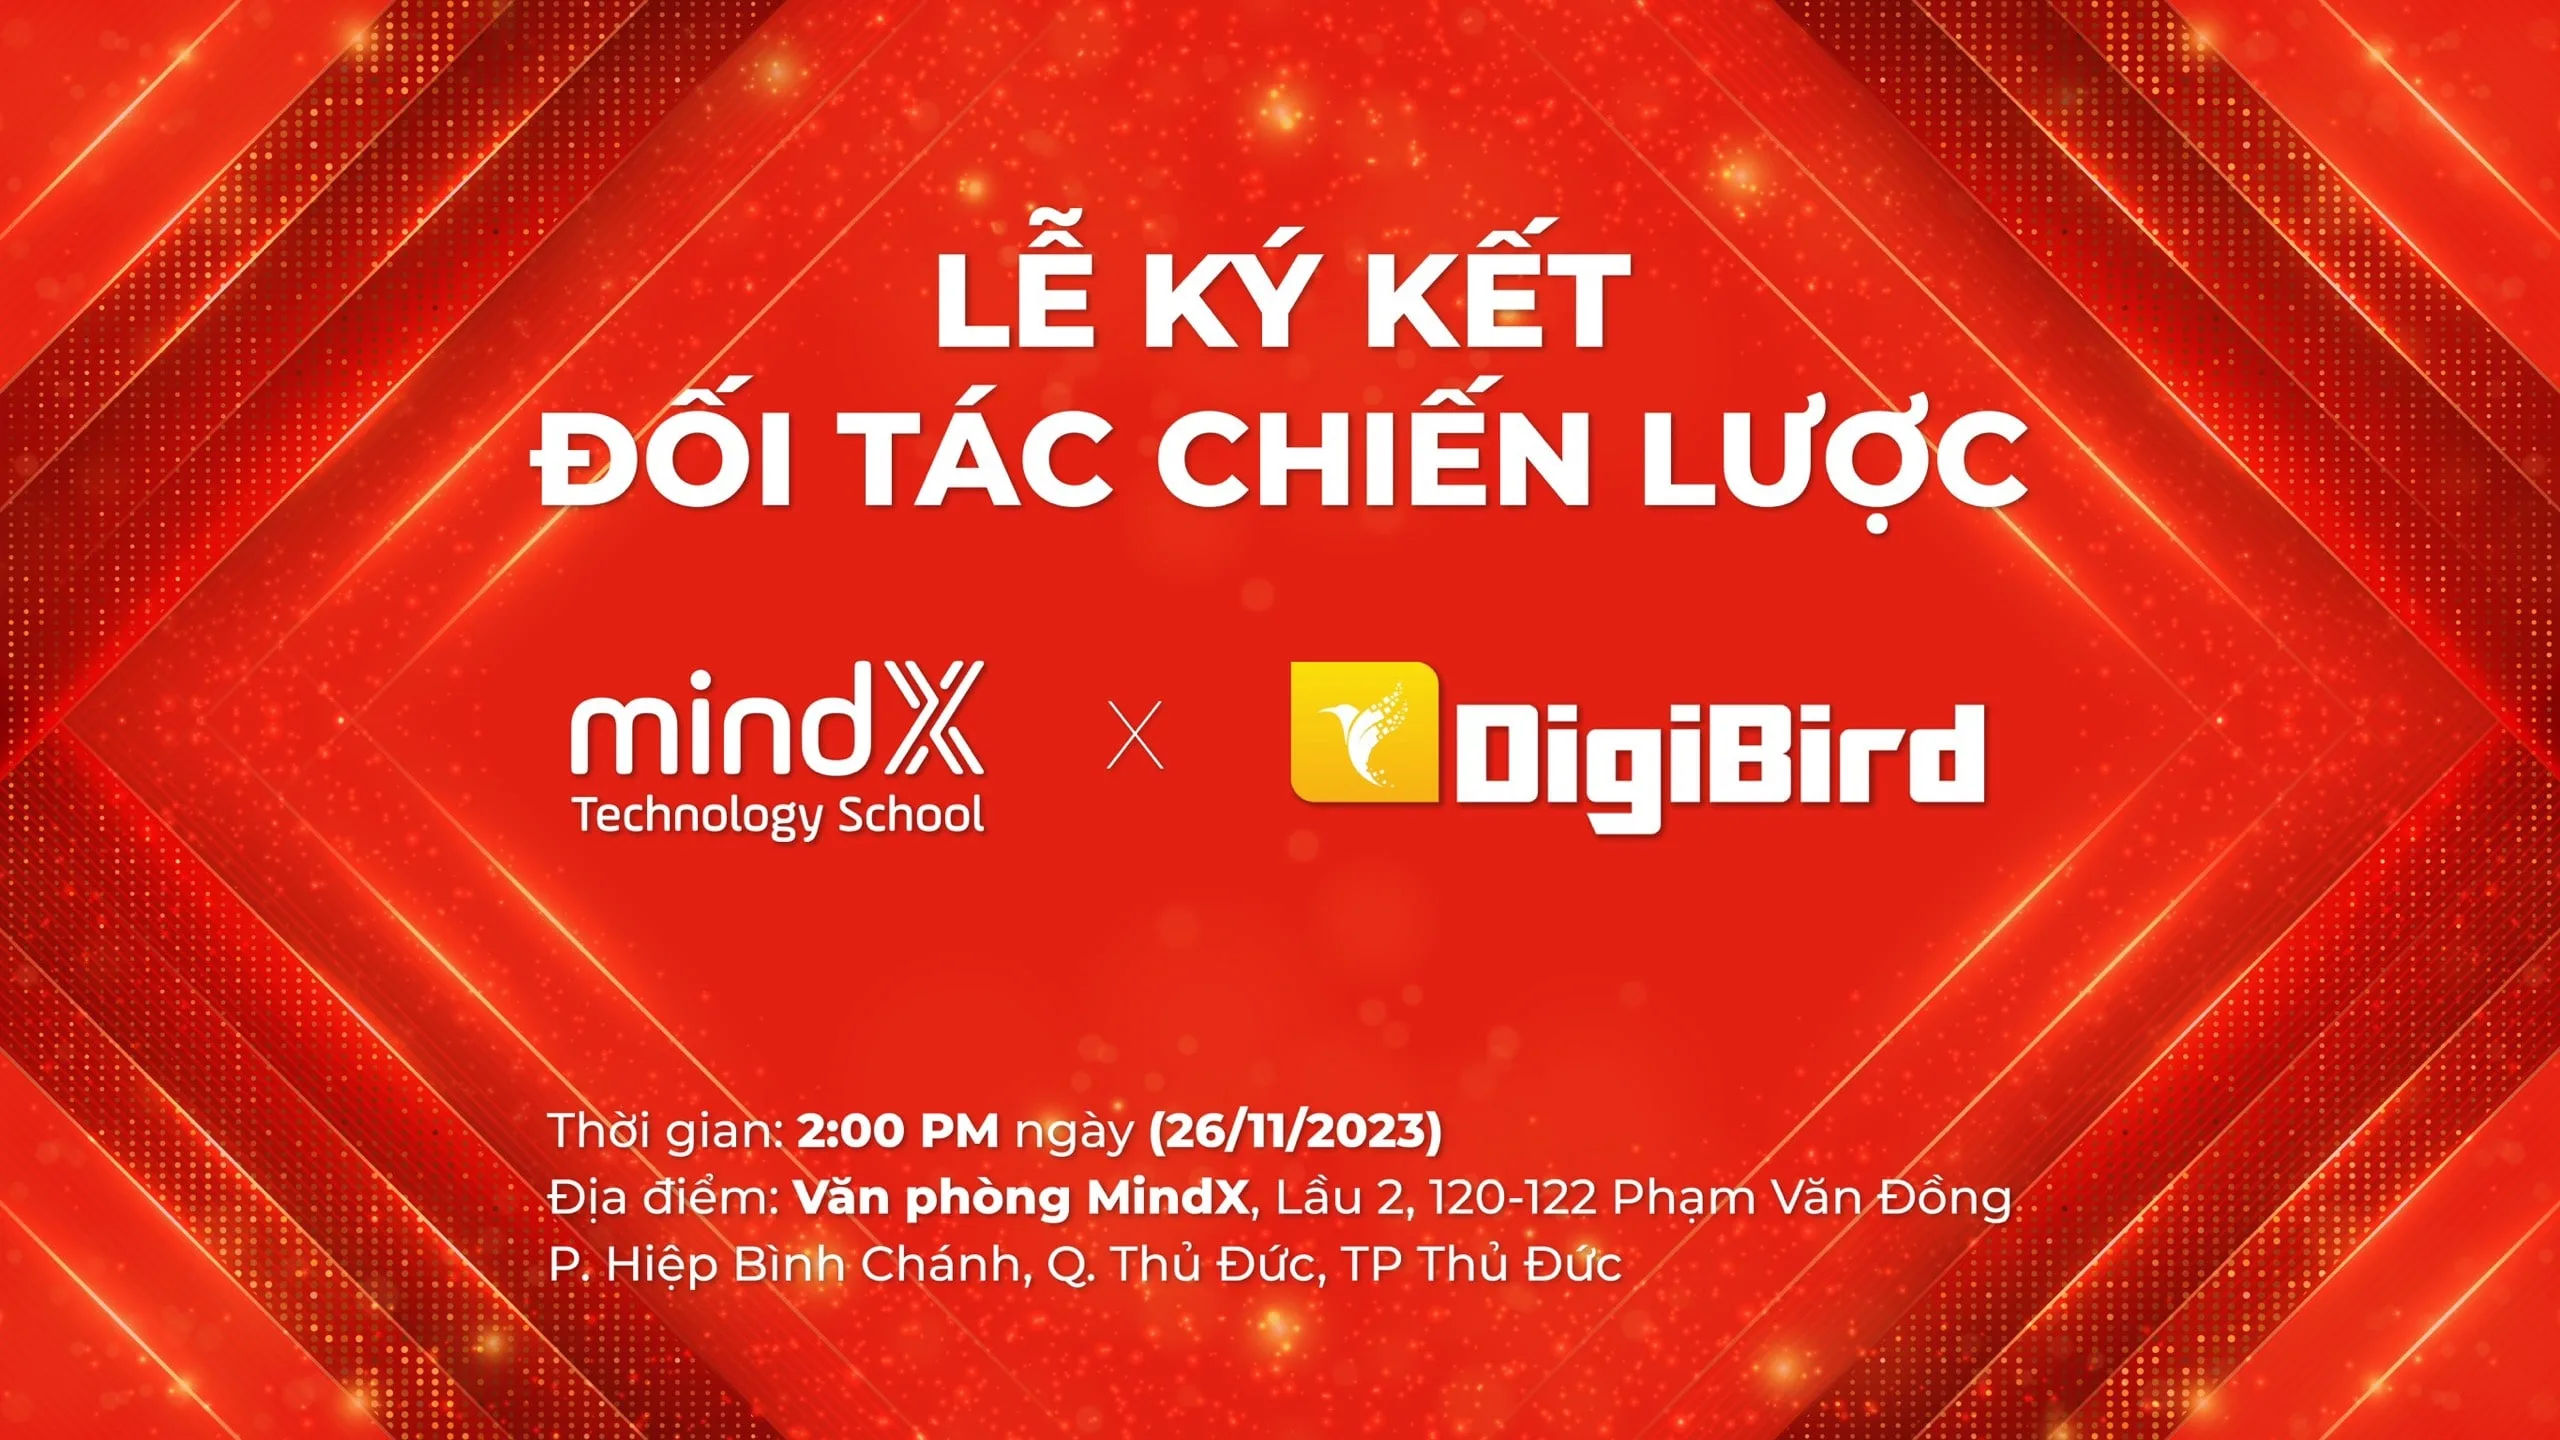 DigiBird và MindX: Hợp tác chiến lược & Cùng nhau phát triển chuyển đổi số